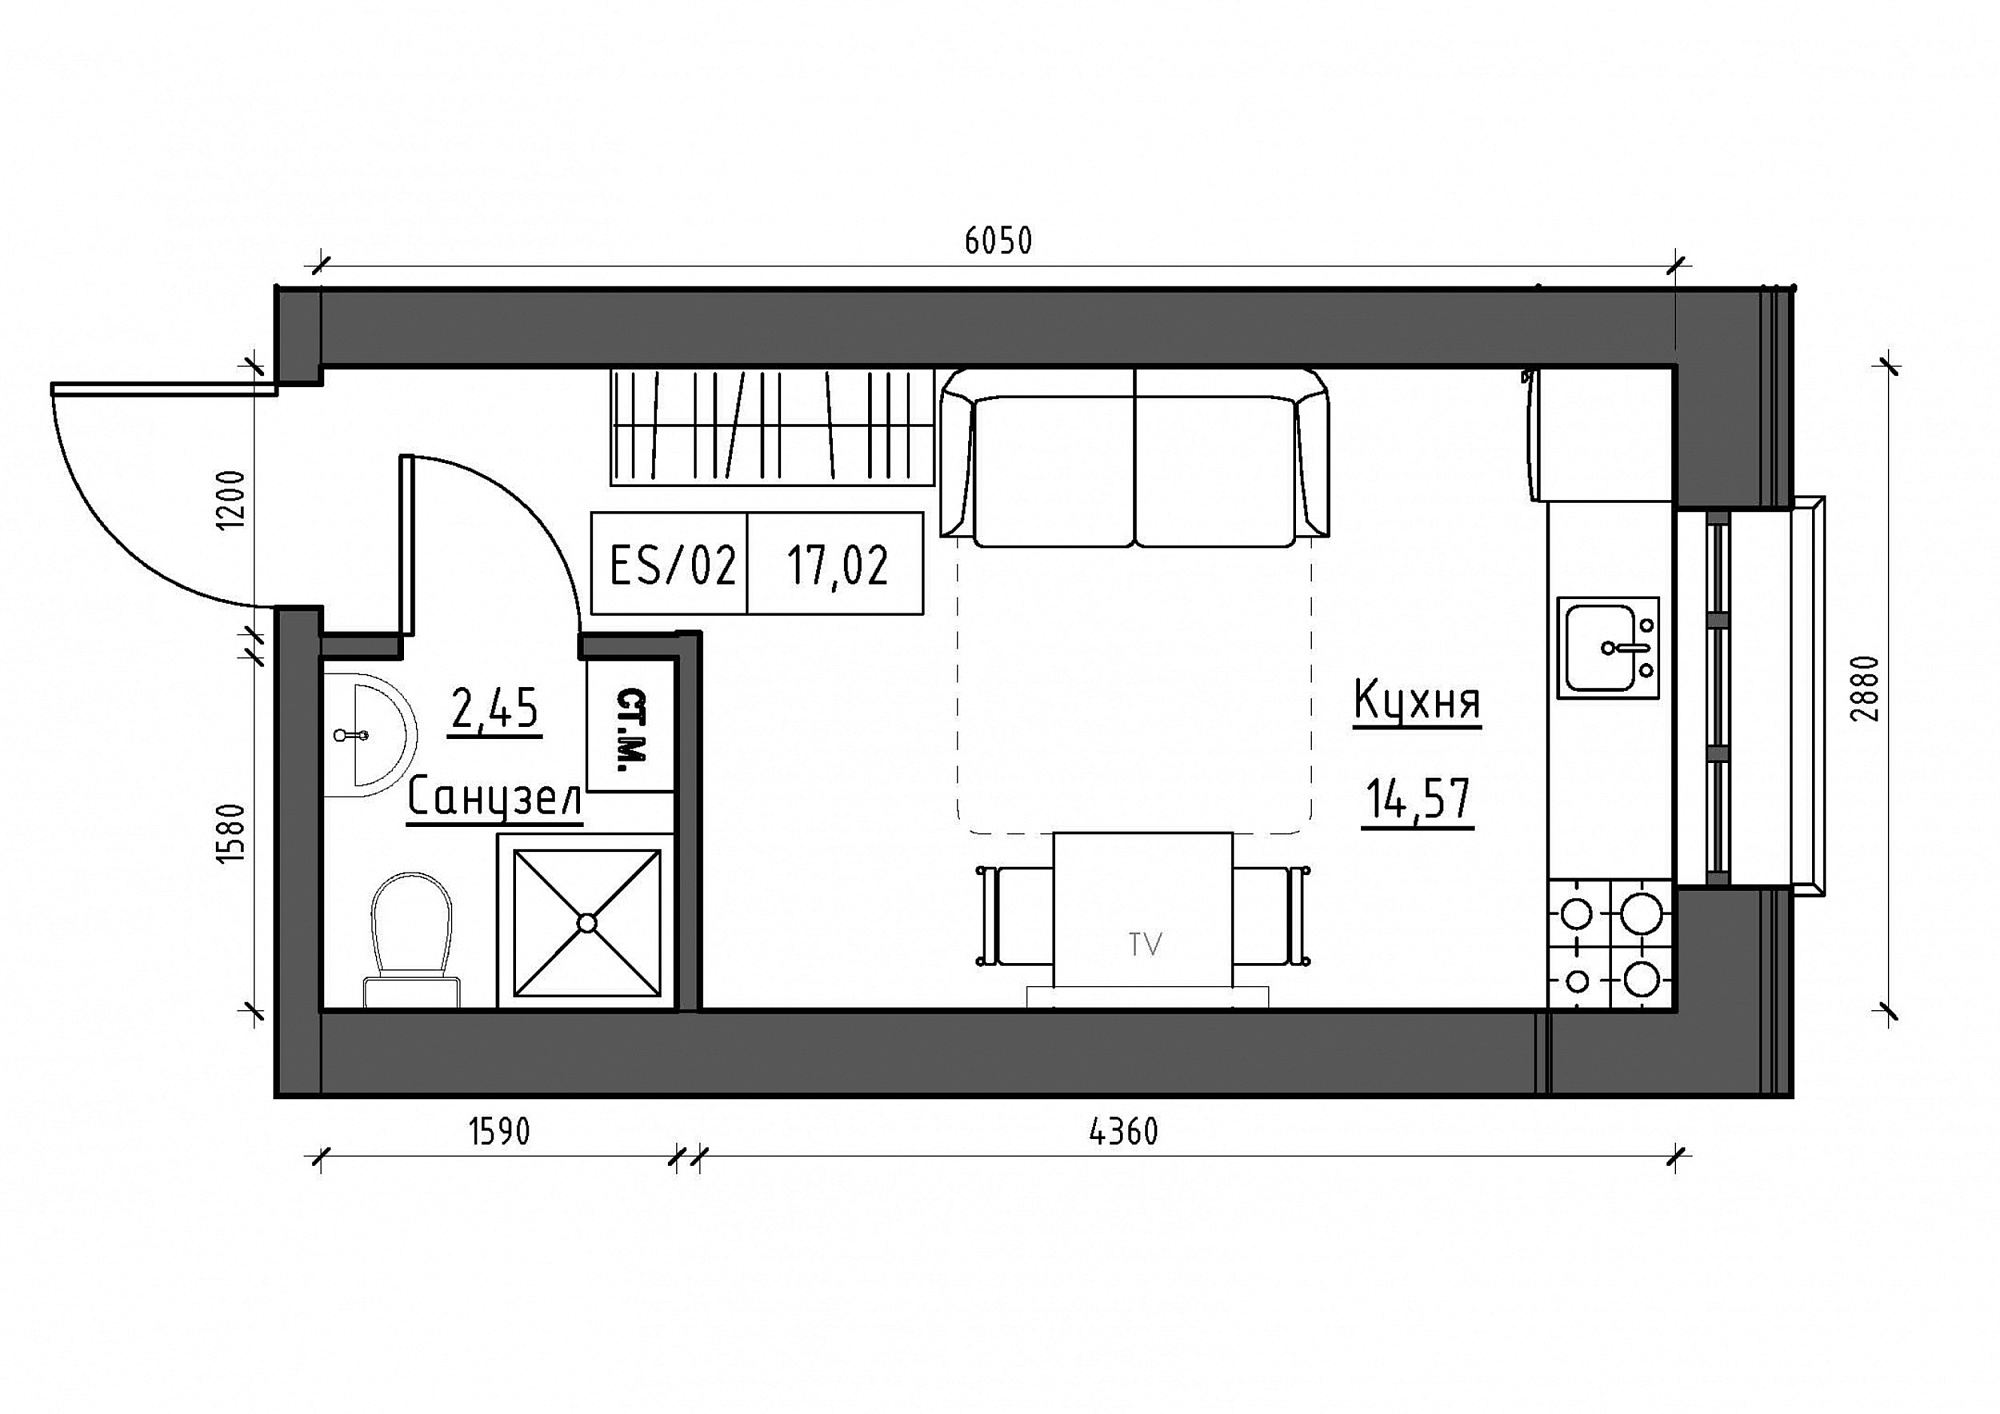 Планування Smart-квартира площею 17.02м2, KS-012-02/0014.